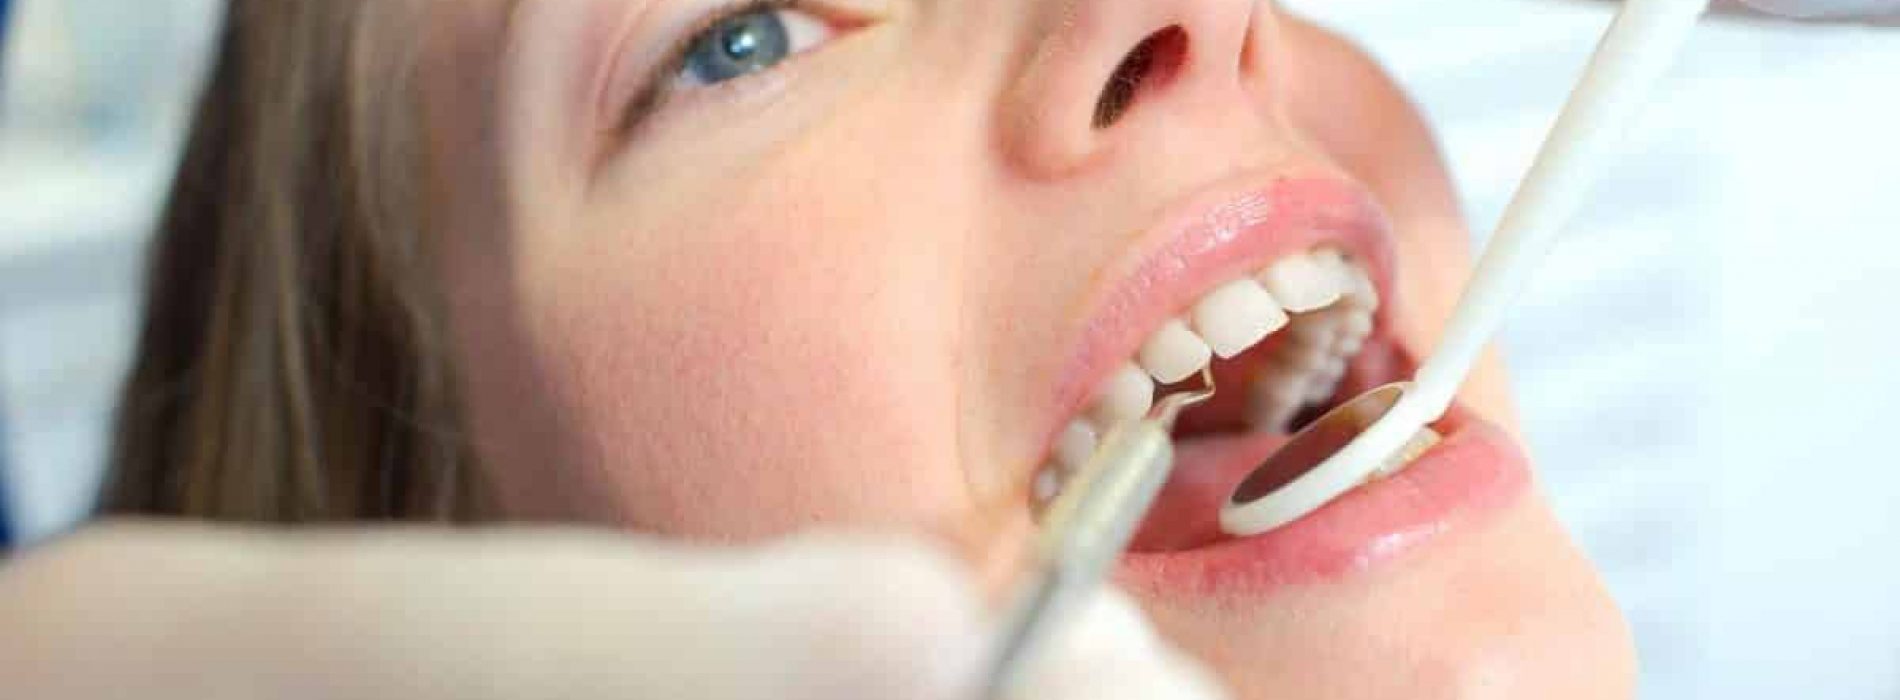 De link tussen kwik tandvullingen en chronische ziekte